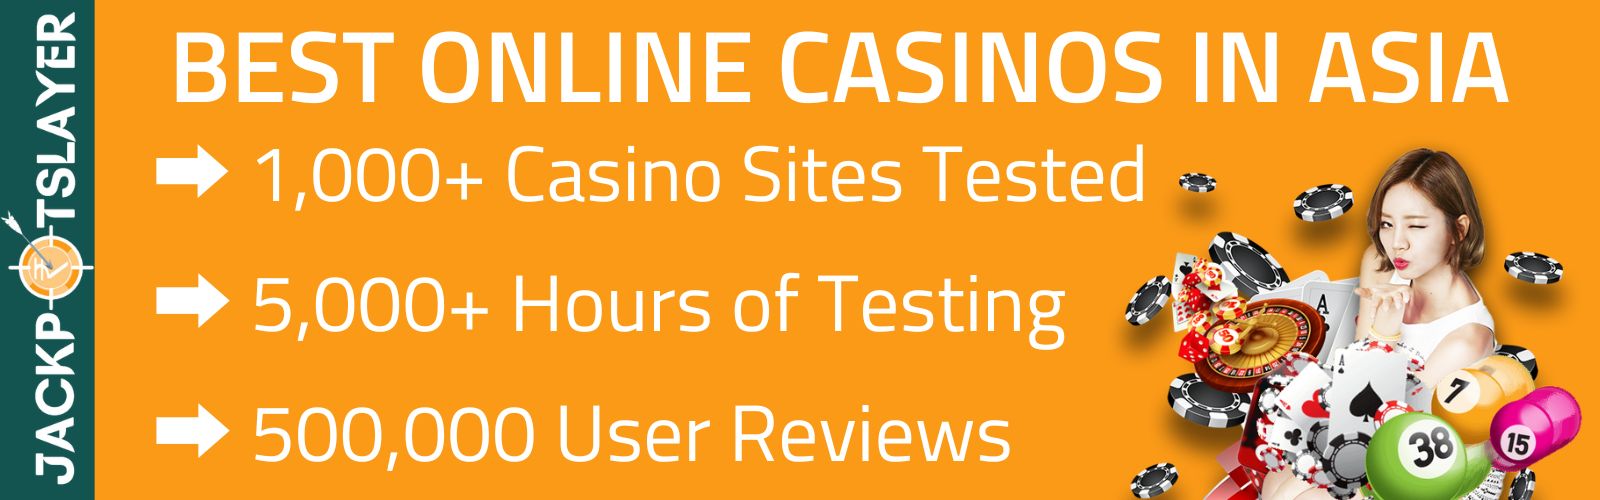 Best Online Casinos Asia